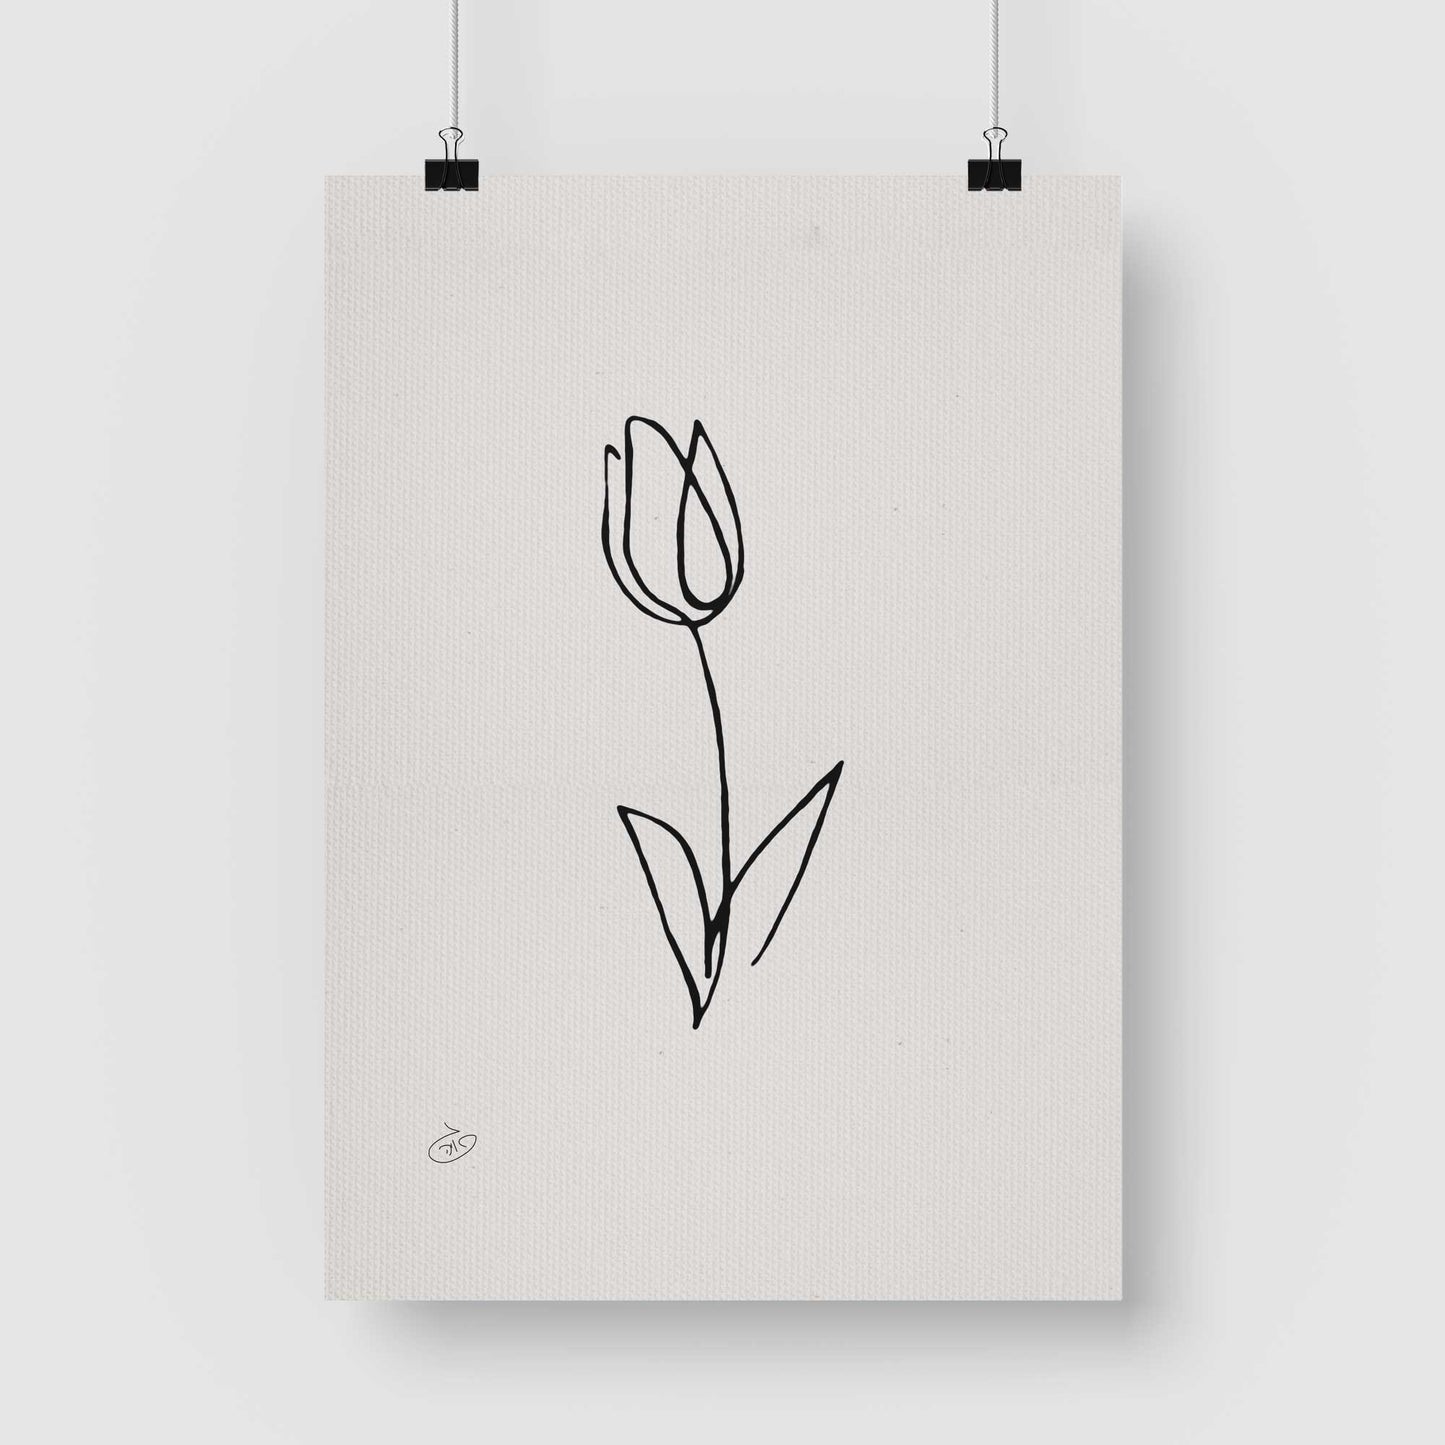 פוסטר One Line Flower - Tulip Poster ציור מקורי של גאיה המקדם את המודעות לאלימות בין בני זוג בכלל וכלפי נשים בפרט